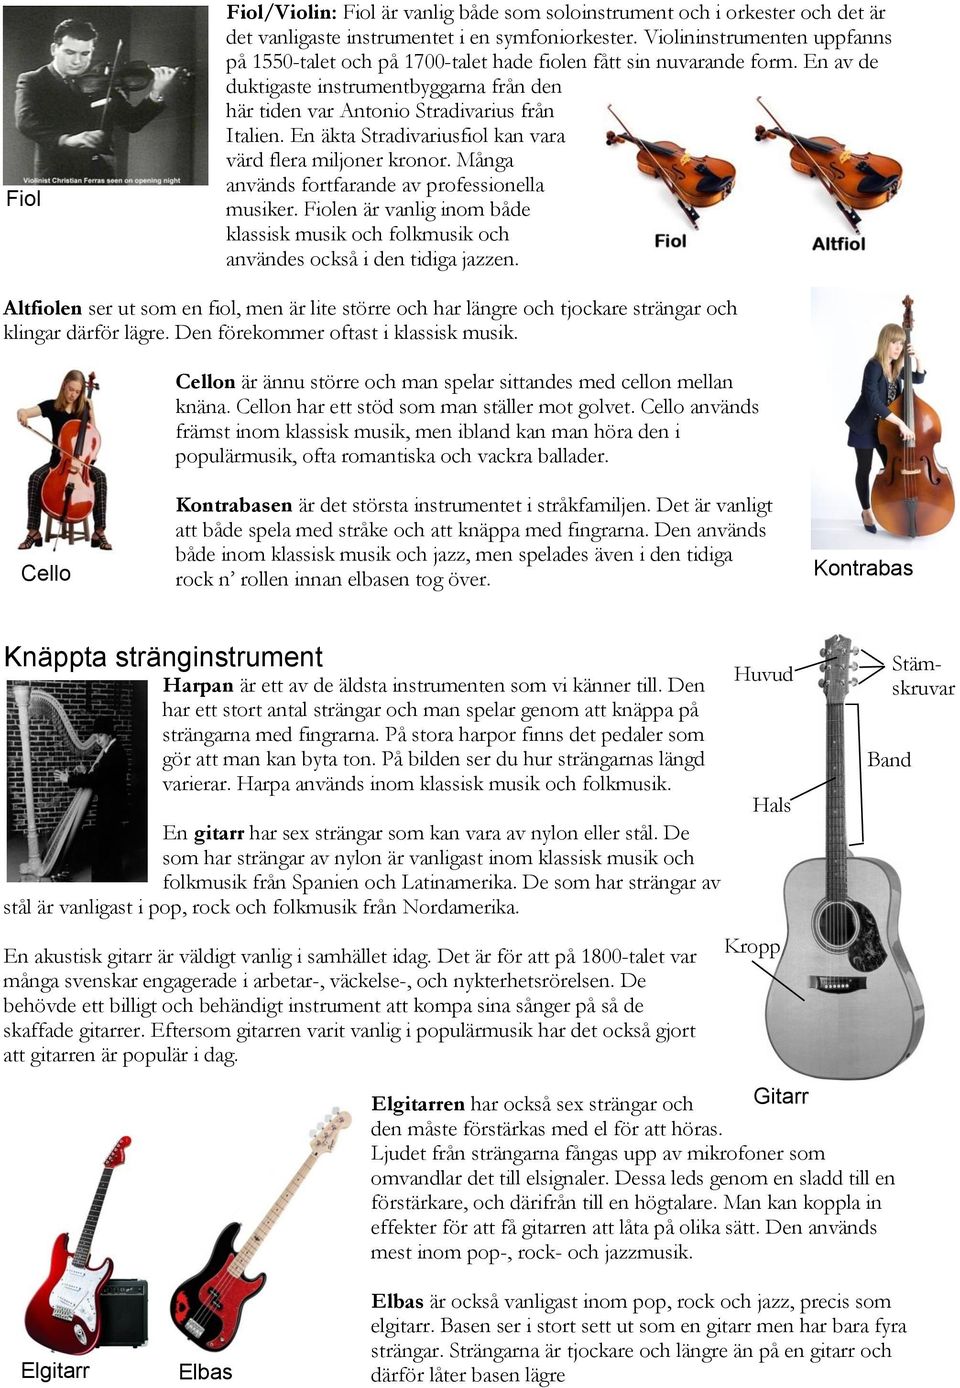 En äkta Stradivariusfiol kan vara värd flera miljoner kronor. Många används fortfarande av professionella musiker.